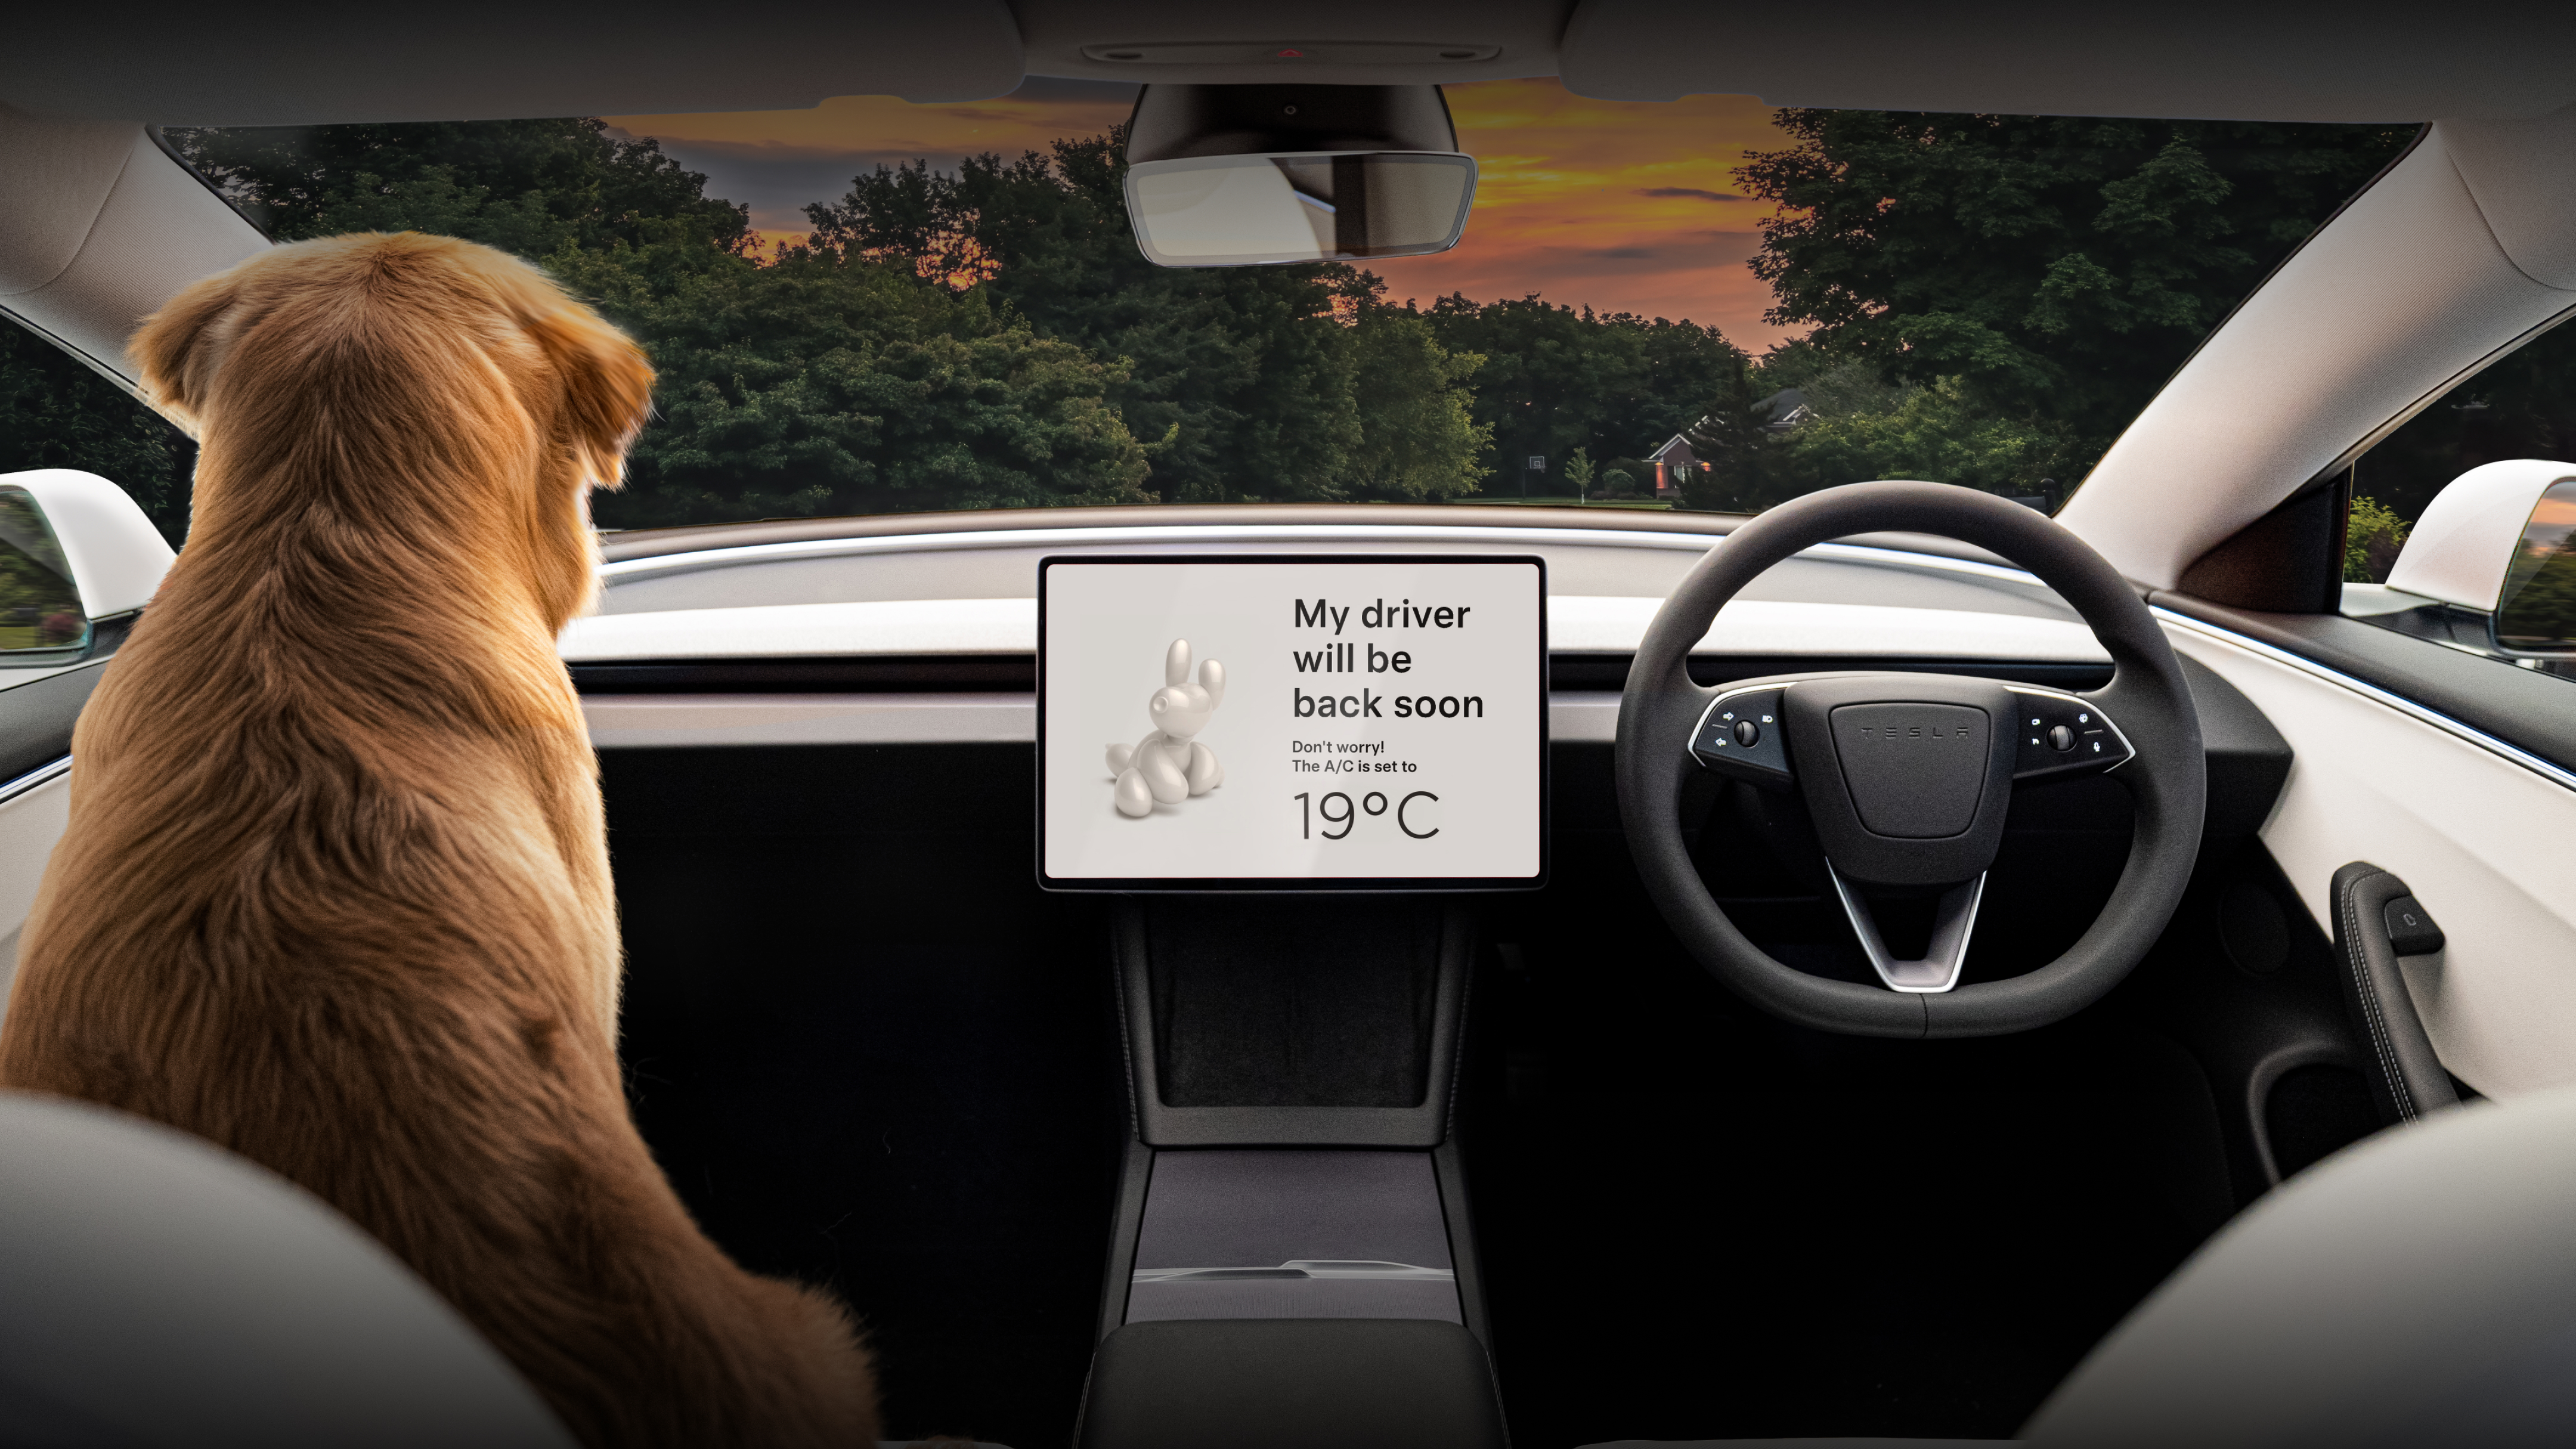 中央觸控式螢幕顯示「我的駕駛員即將回來」，座位上有一條金毛獵犬。